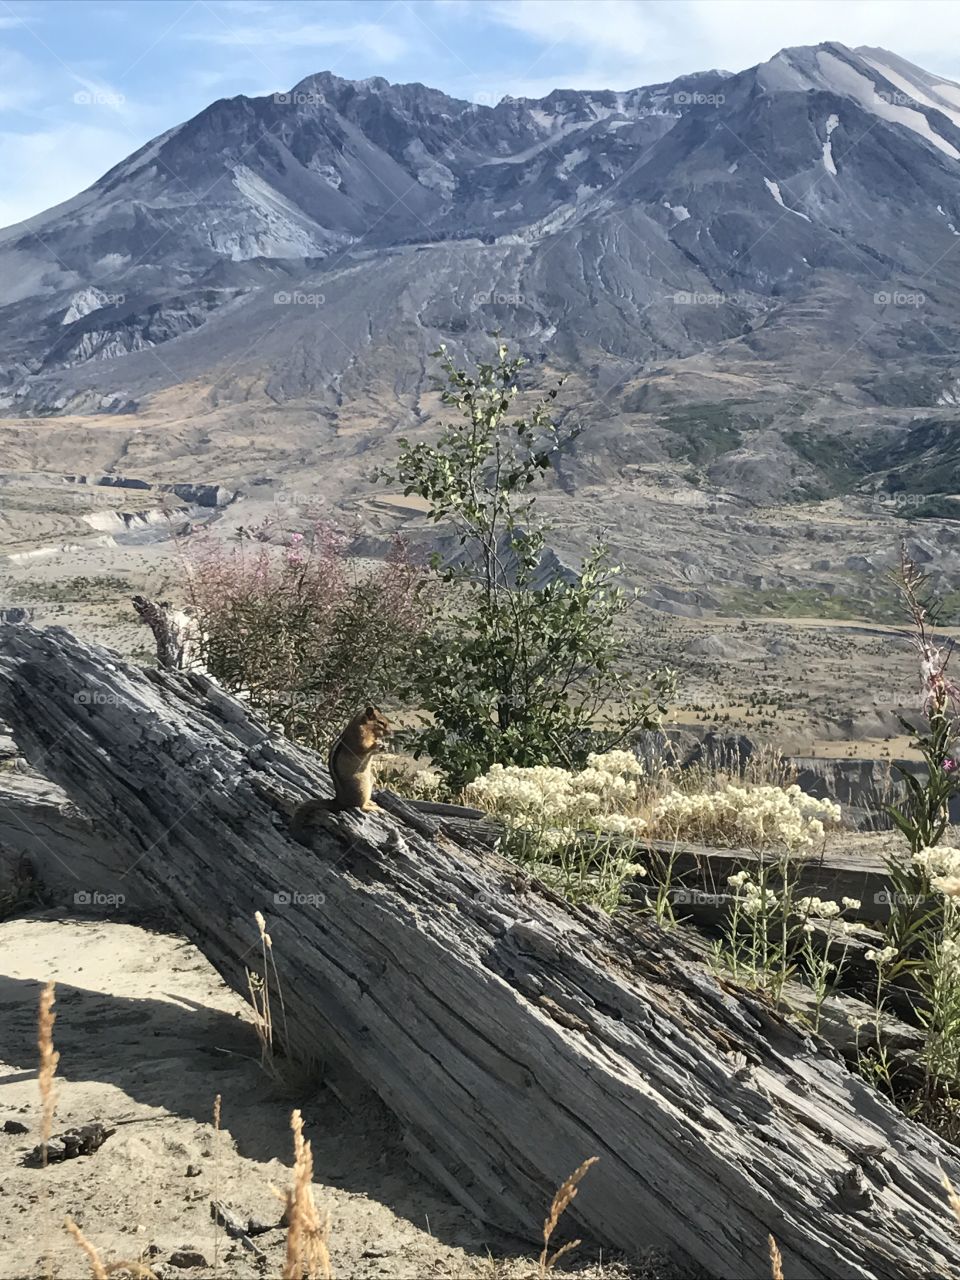 Mt. St. Helens chipmunk